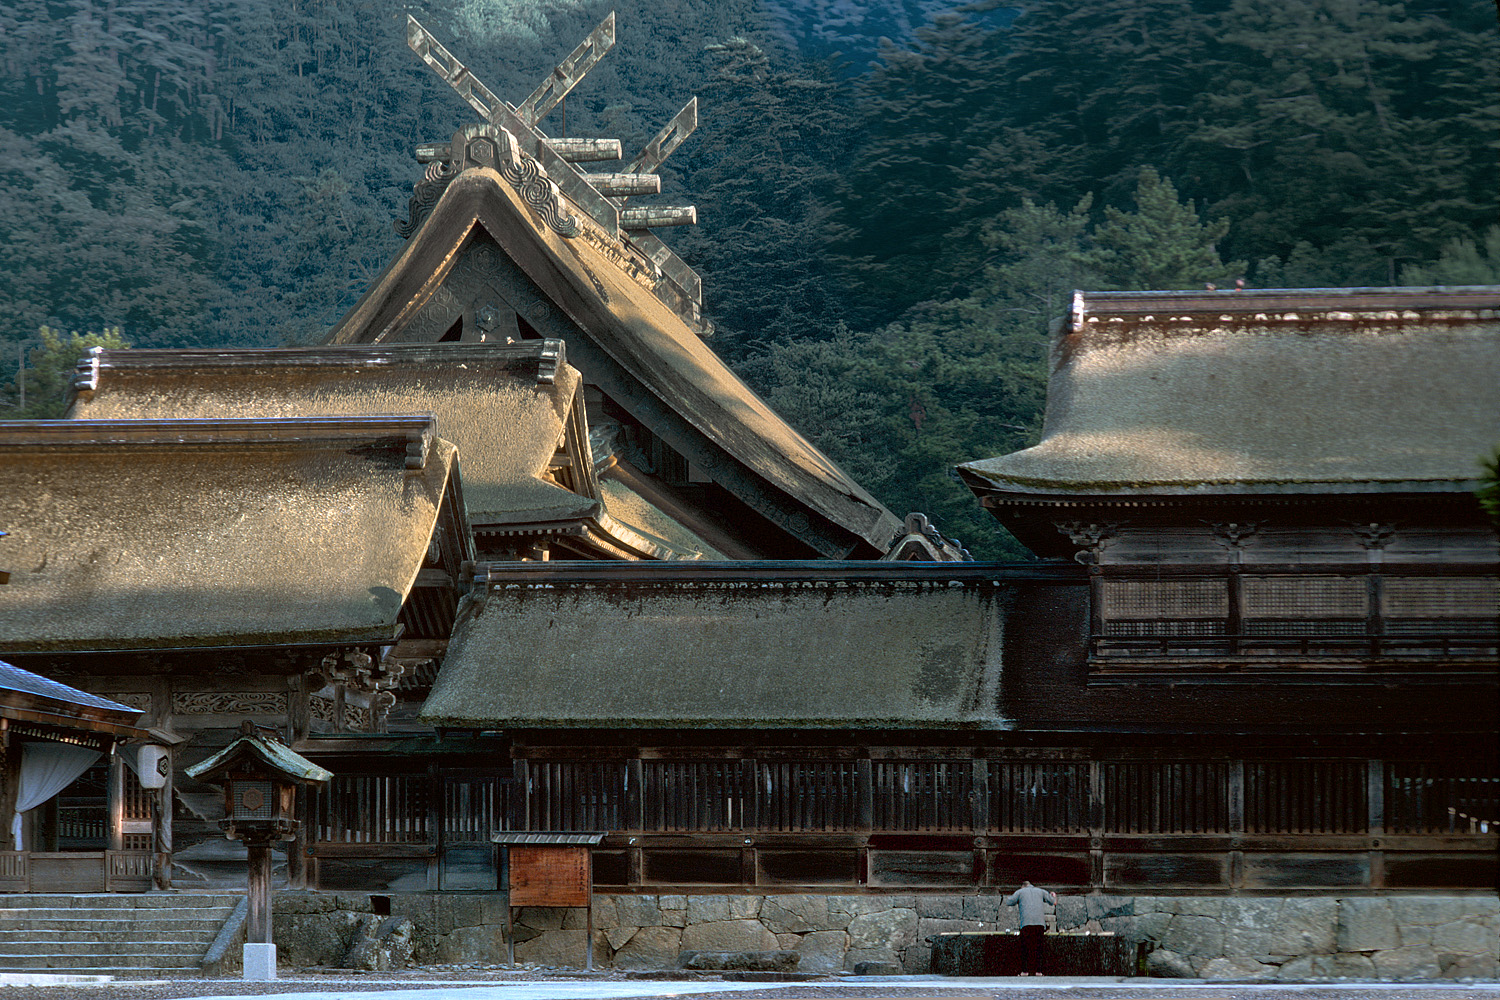 bill-hocker-izumo-taisha-shrine-taisha-japan-1977